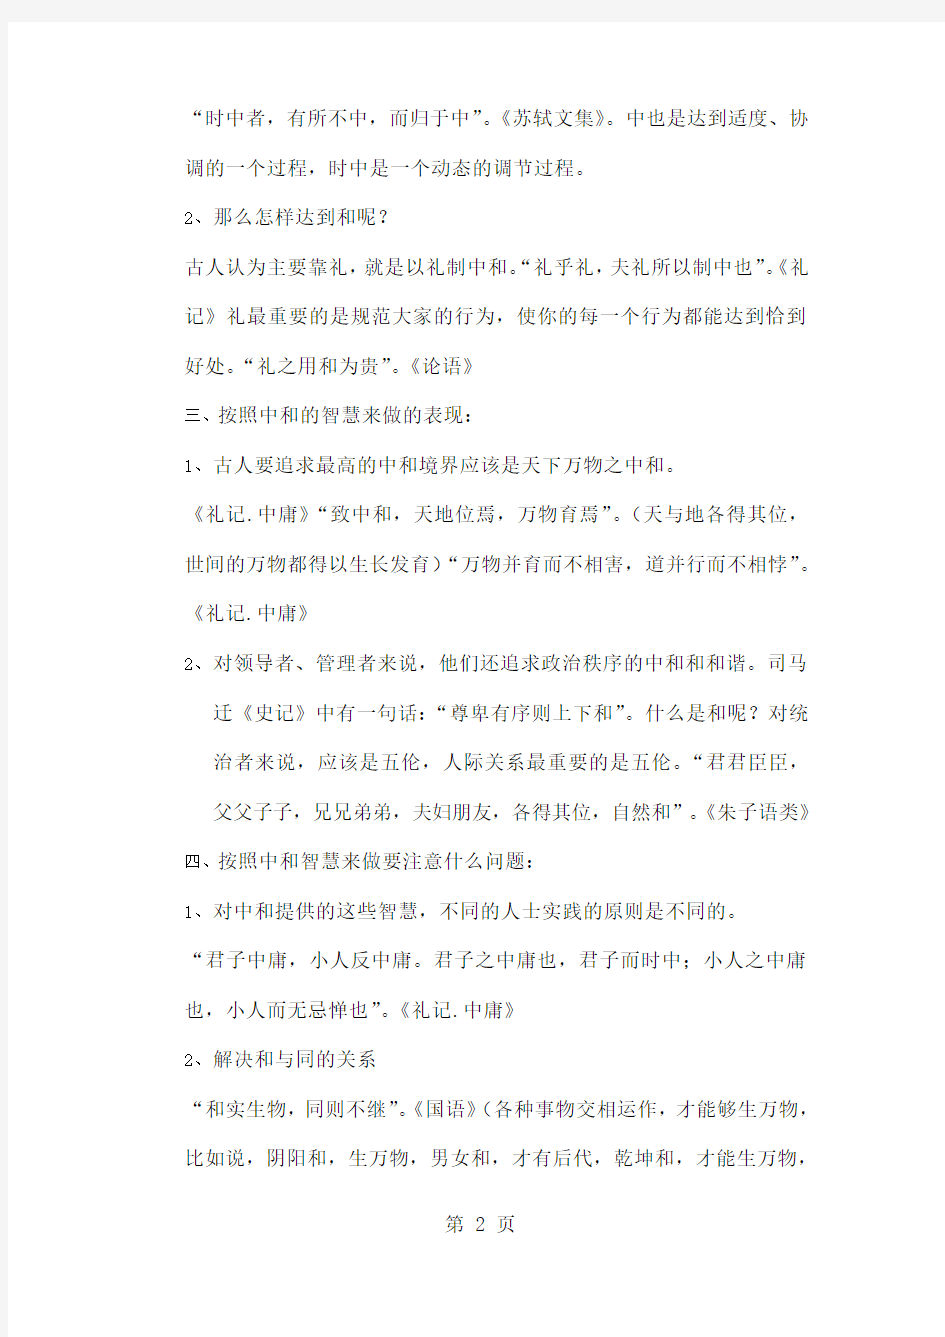 中国传统处世智慧概说-14页精选文档